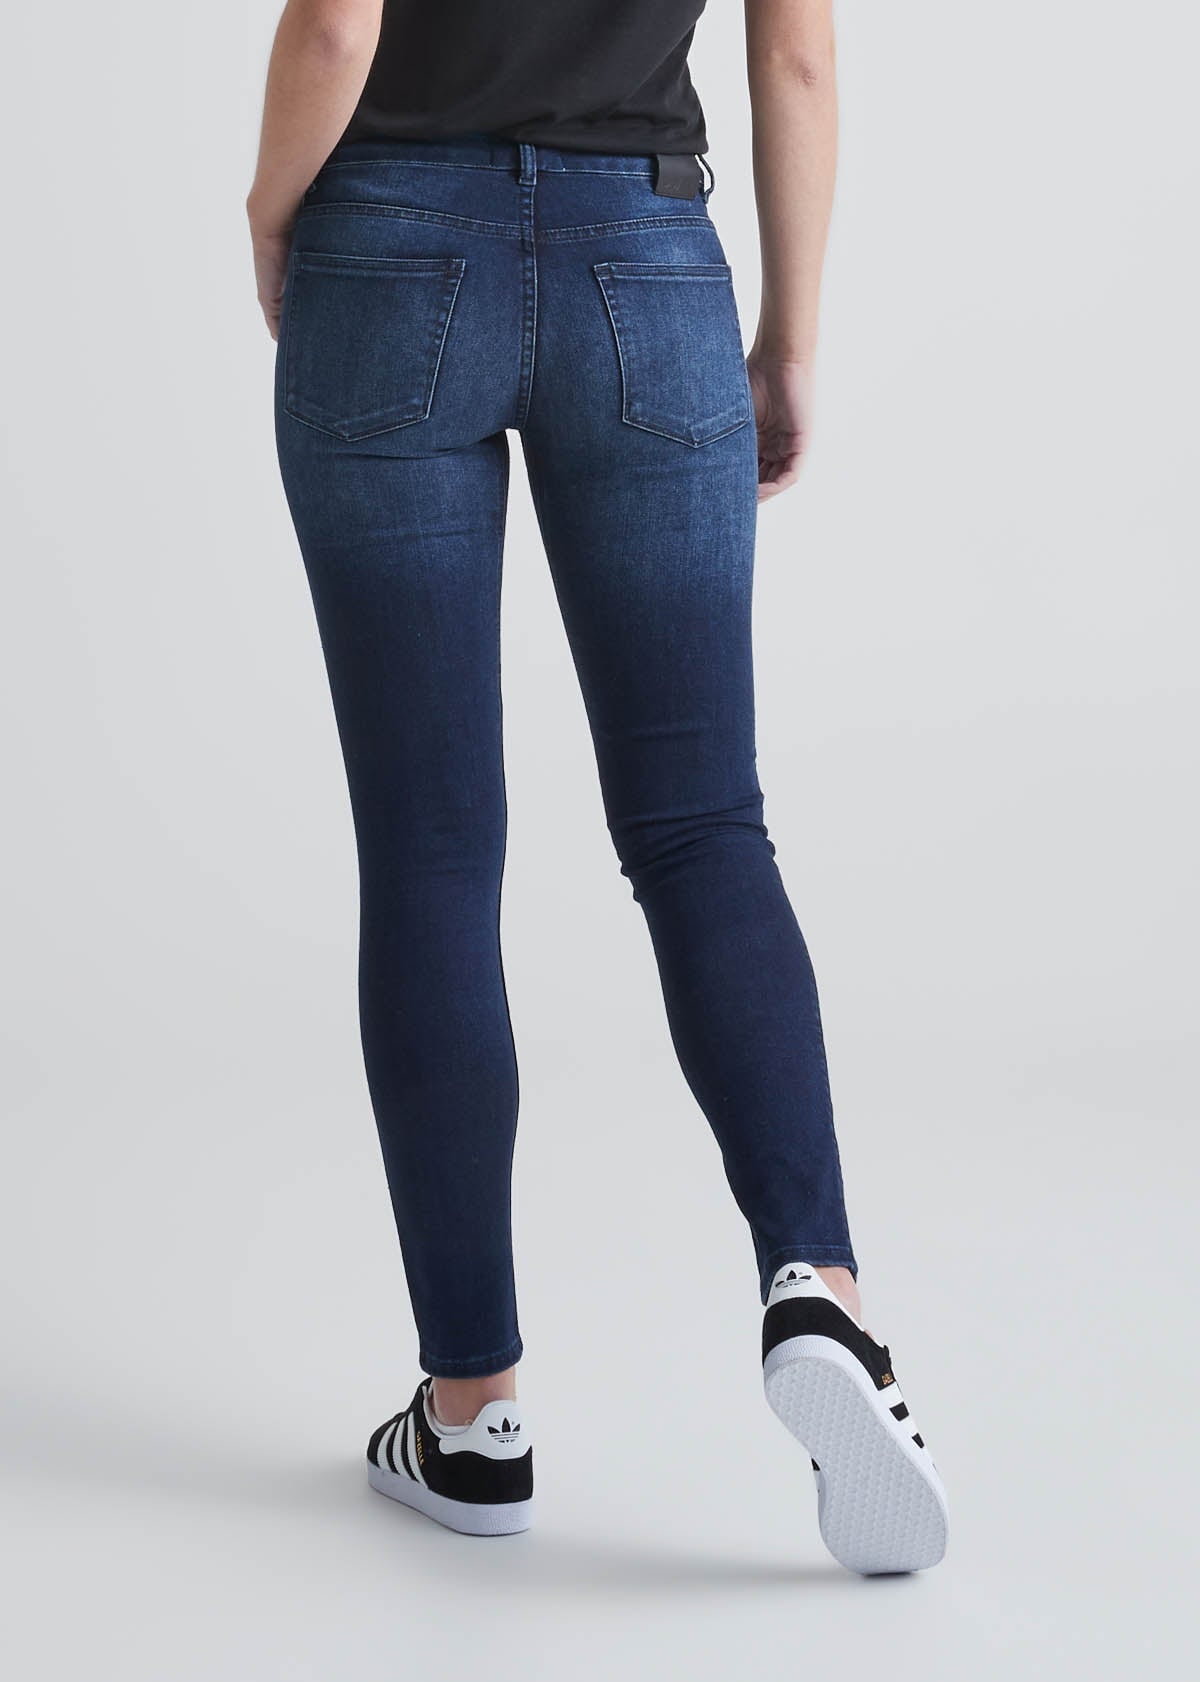 Women's Dark Wash Skinny Jeans  Stretchy Denim Jeans – bornprimitive canada